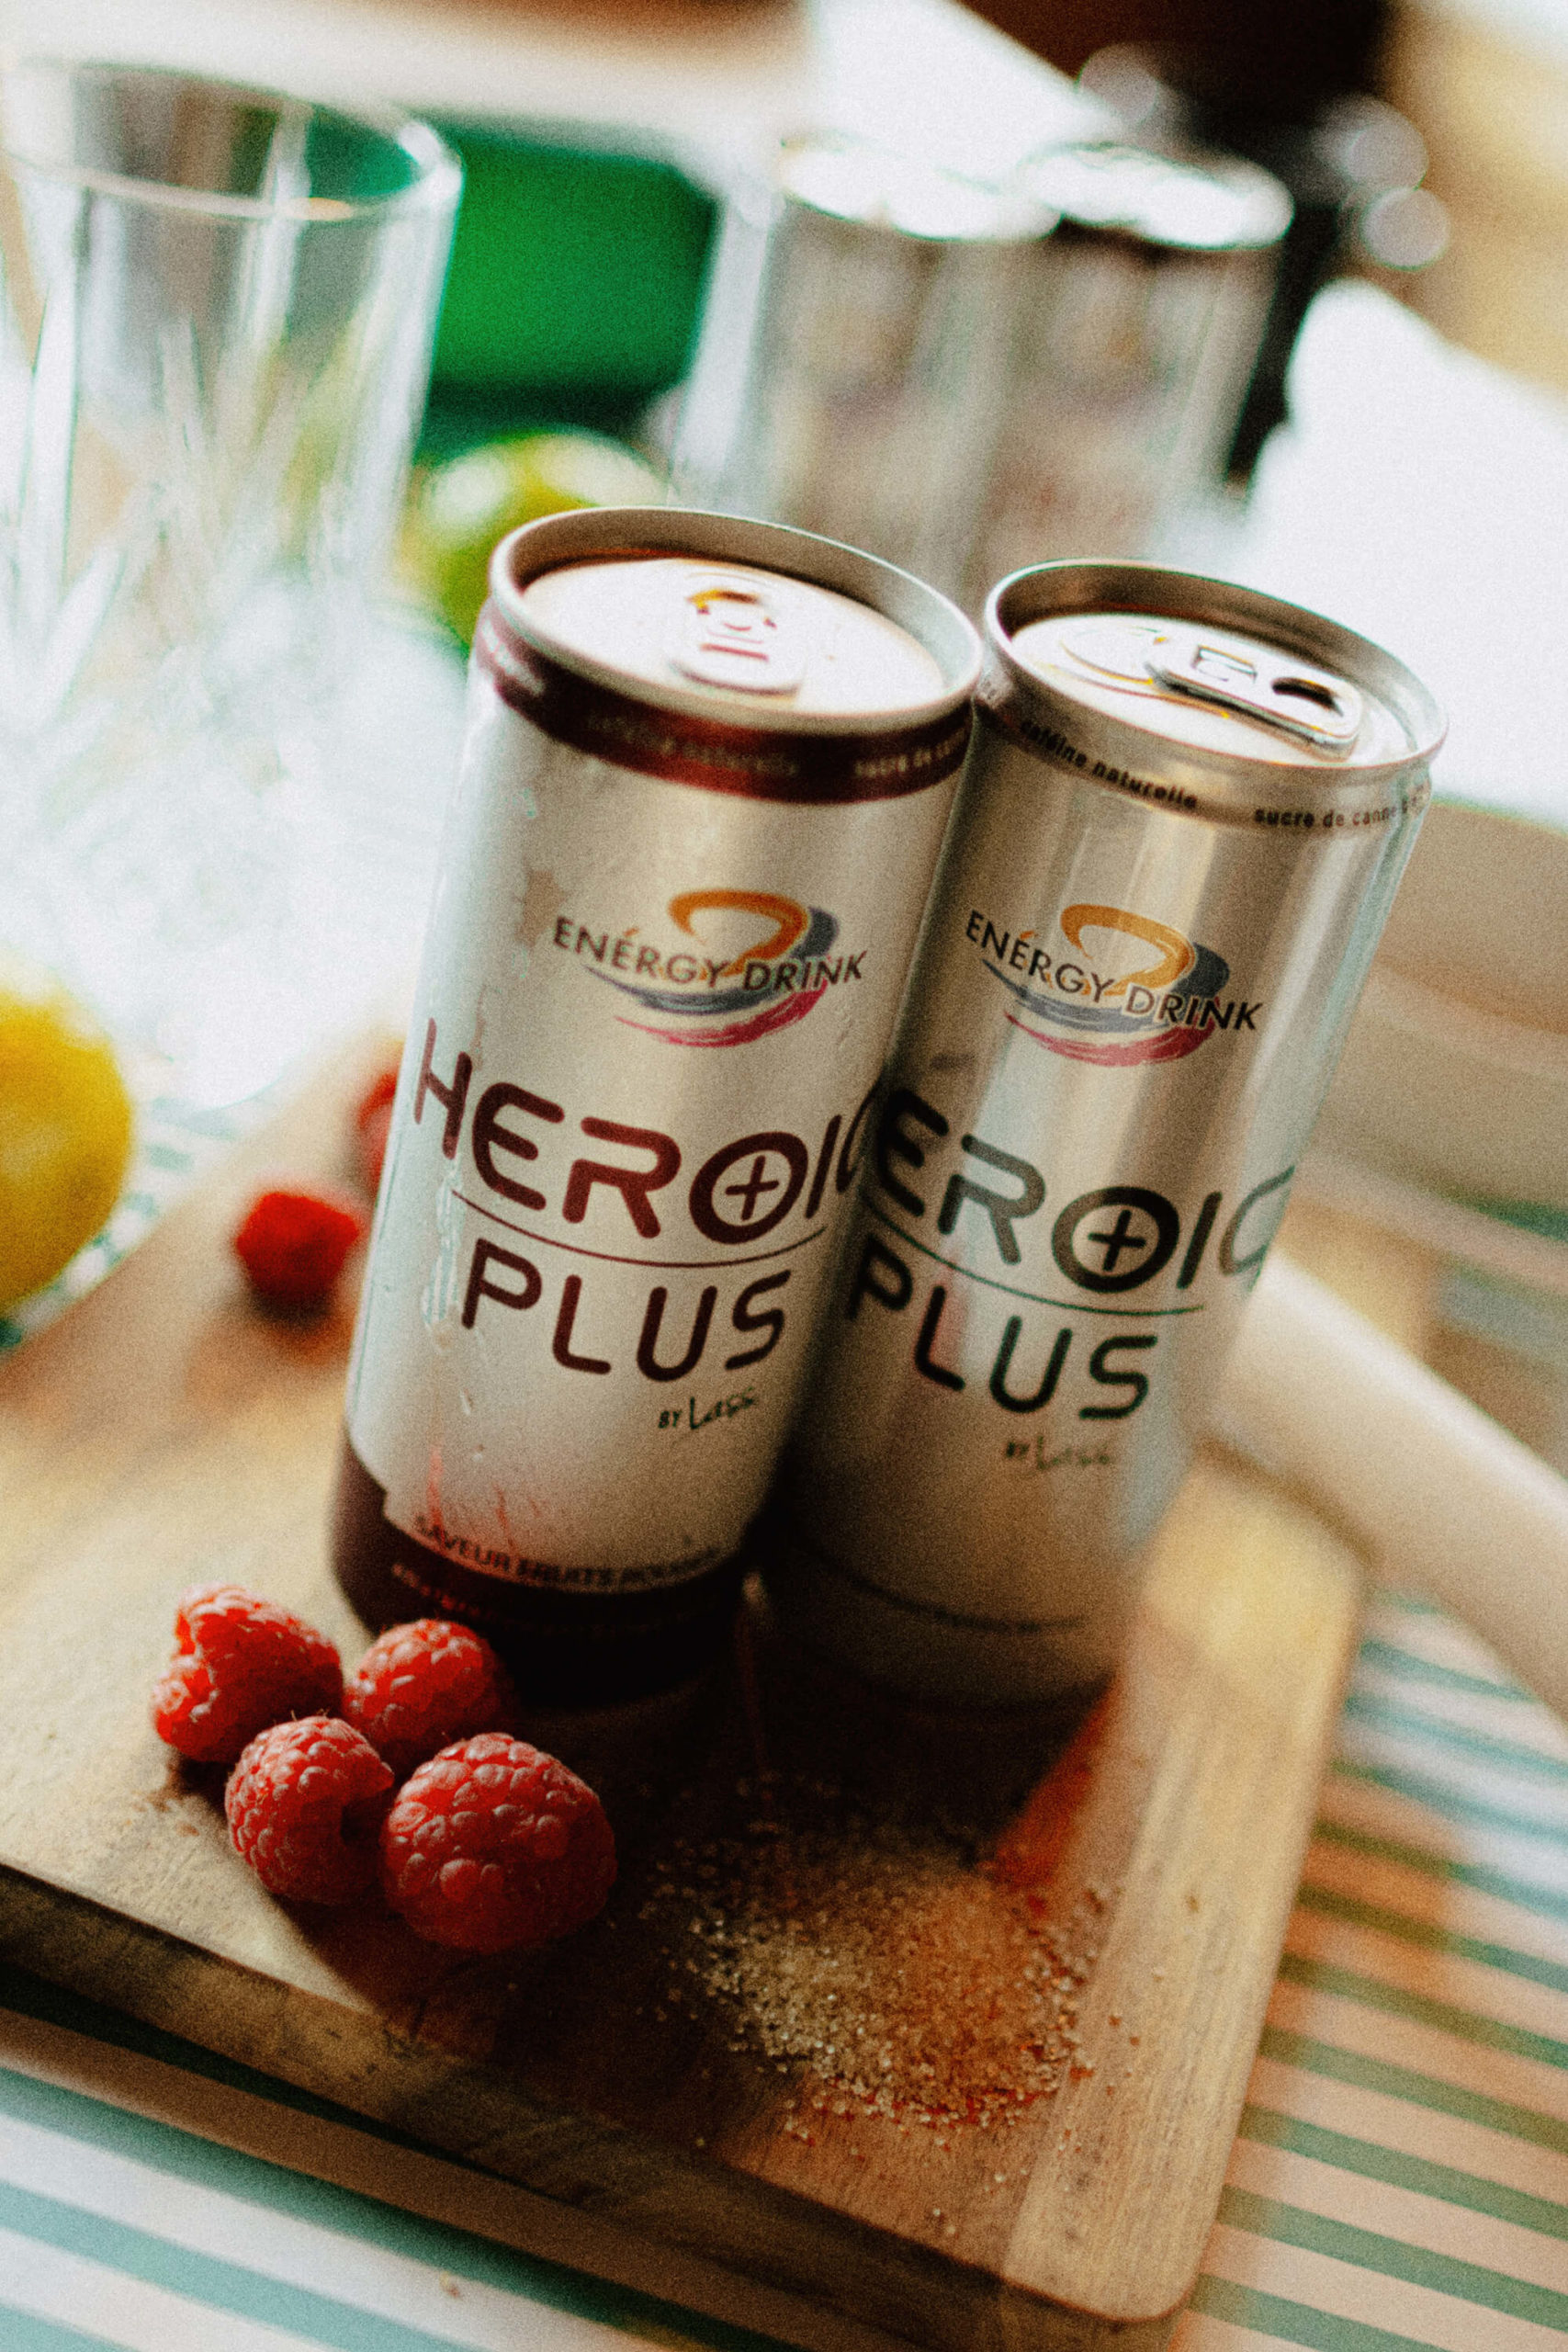 Les boissons Heroic PLUS sont des boissons riches en vitamine, naturels, sans colorants artificiels et à base de caféine naturels et de sucre de canne bio. Indispensable pour votre quotidien